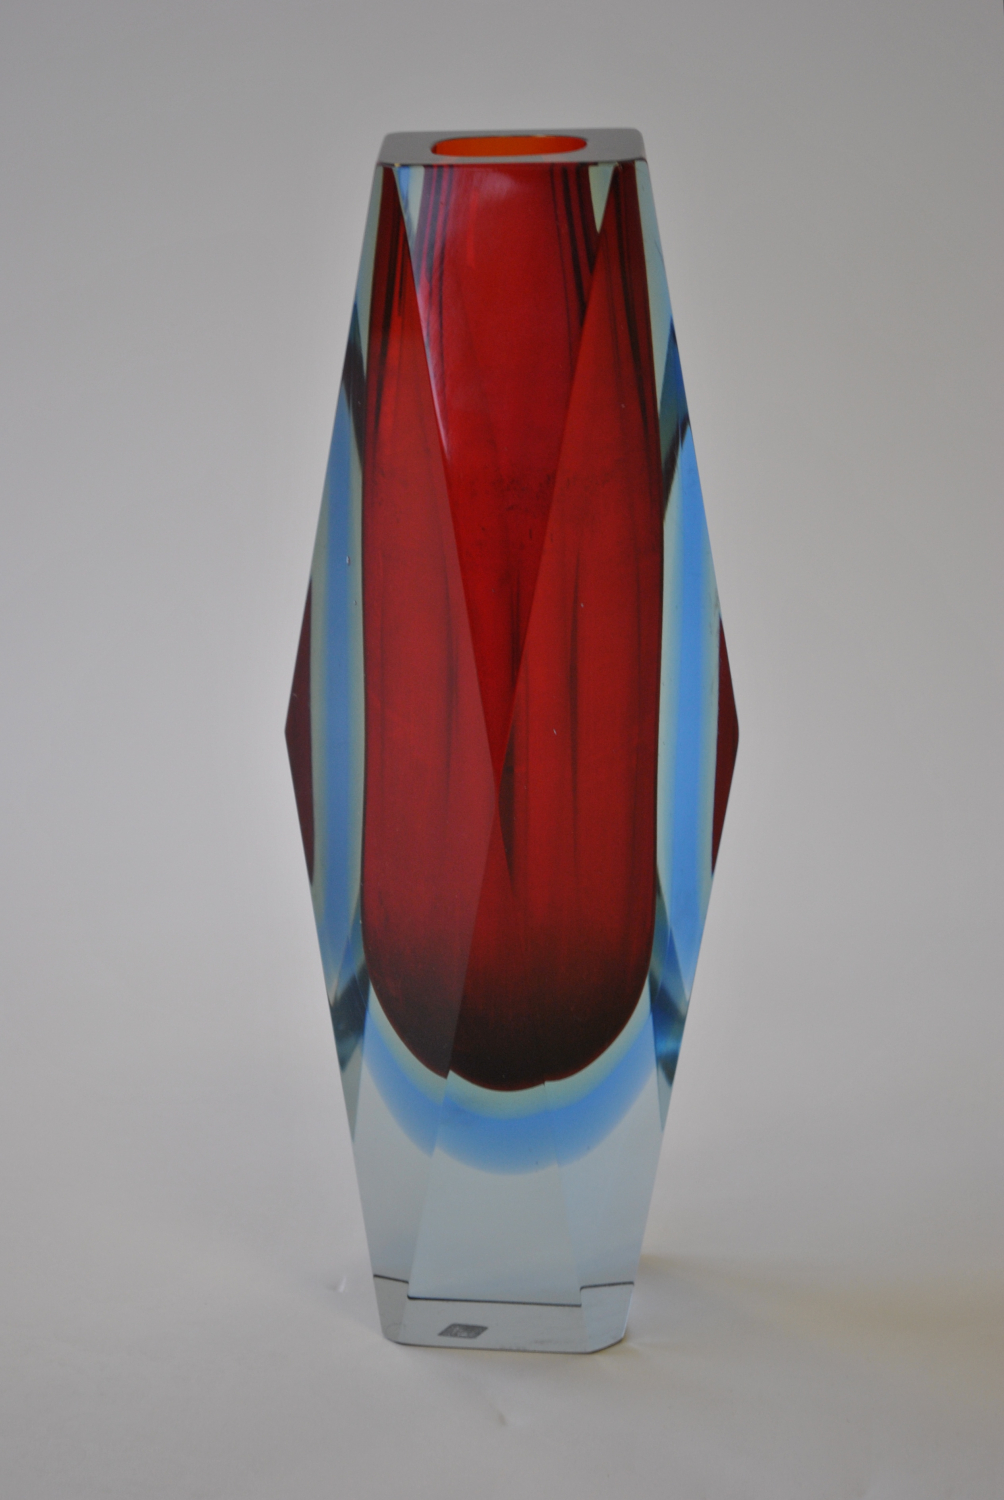 Mandruzzato Glass Vase